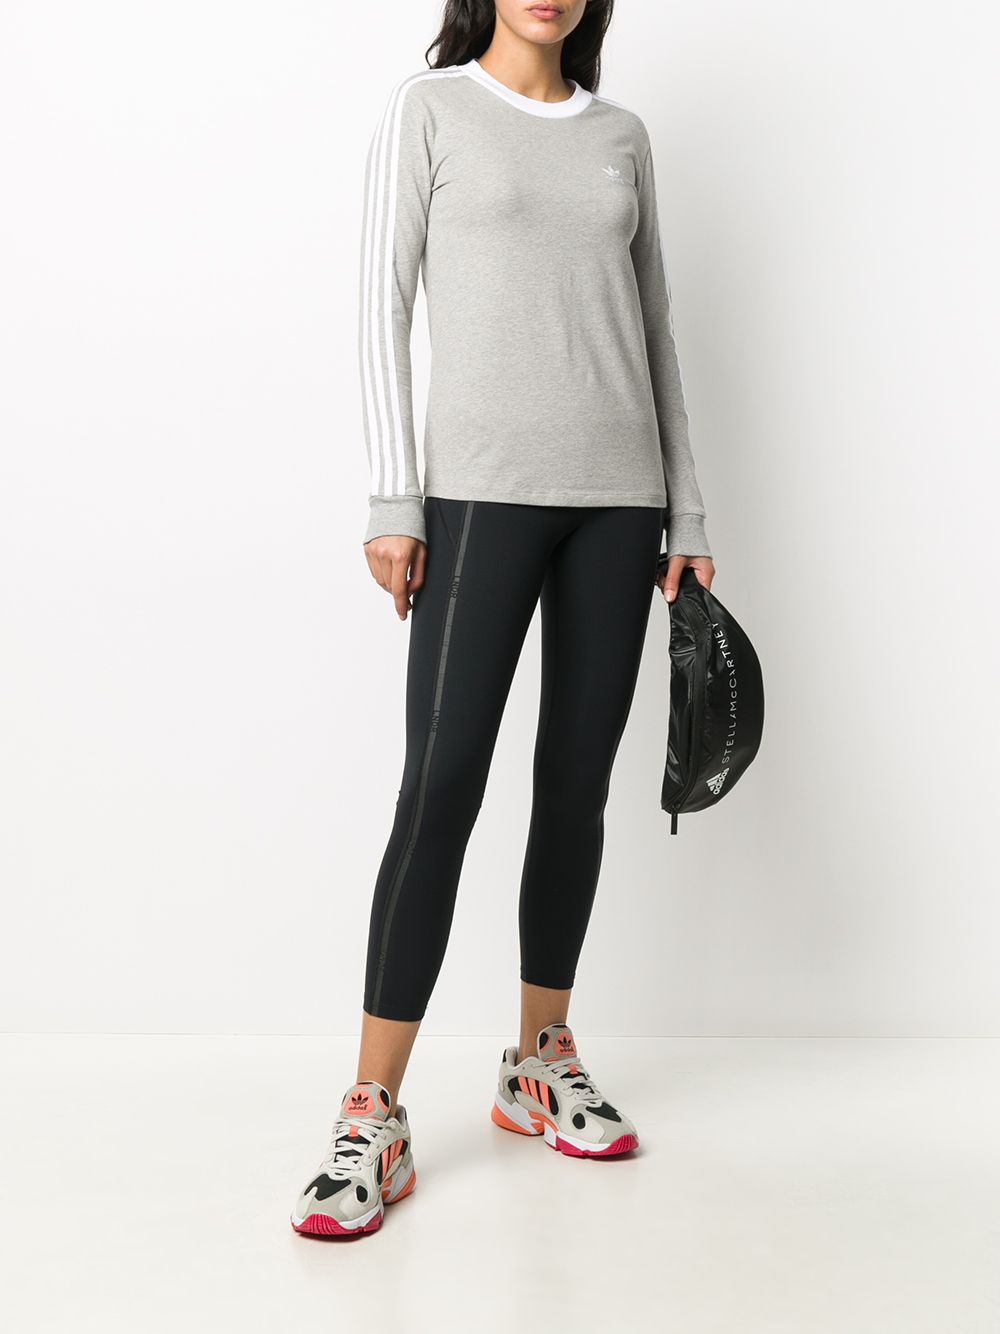 фото Adidas свитер с длинными рукавами и контрастными полосками